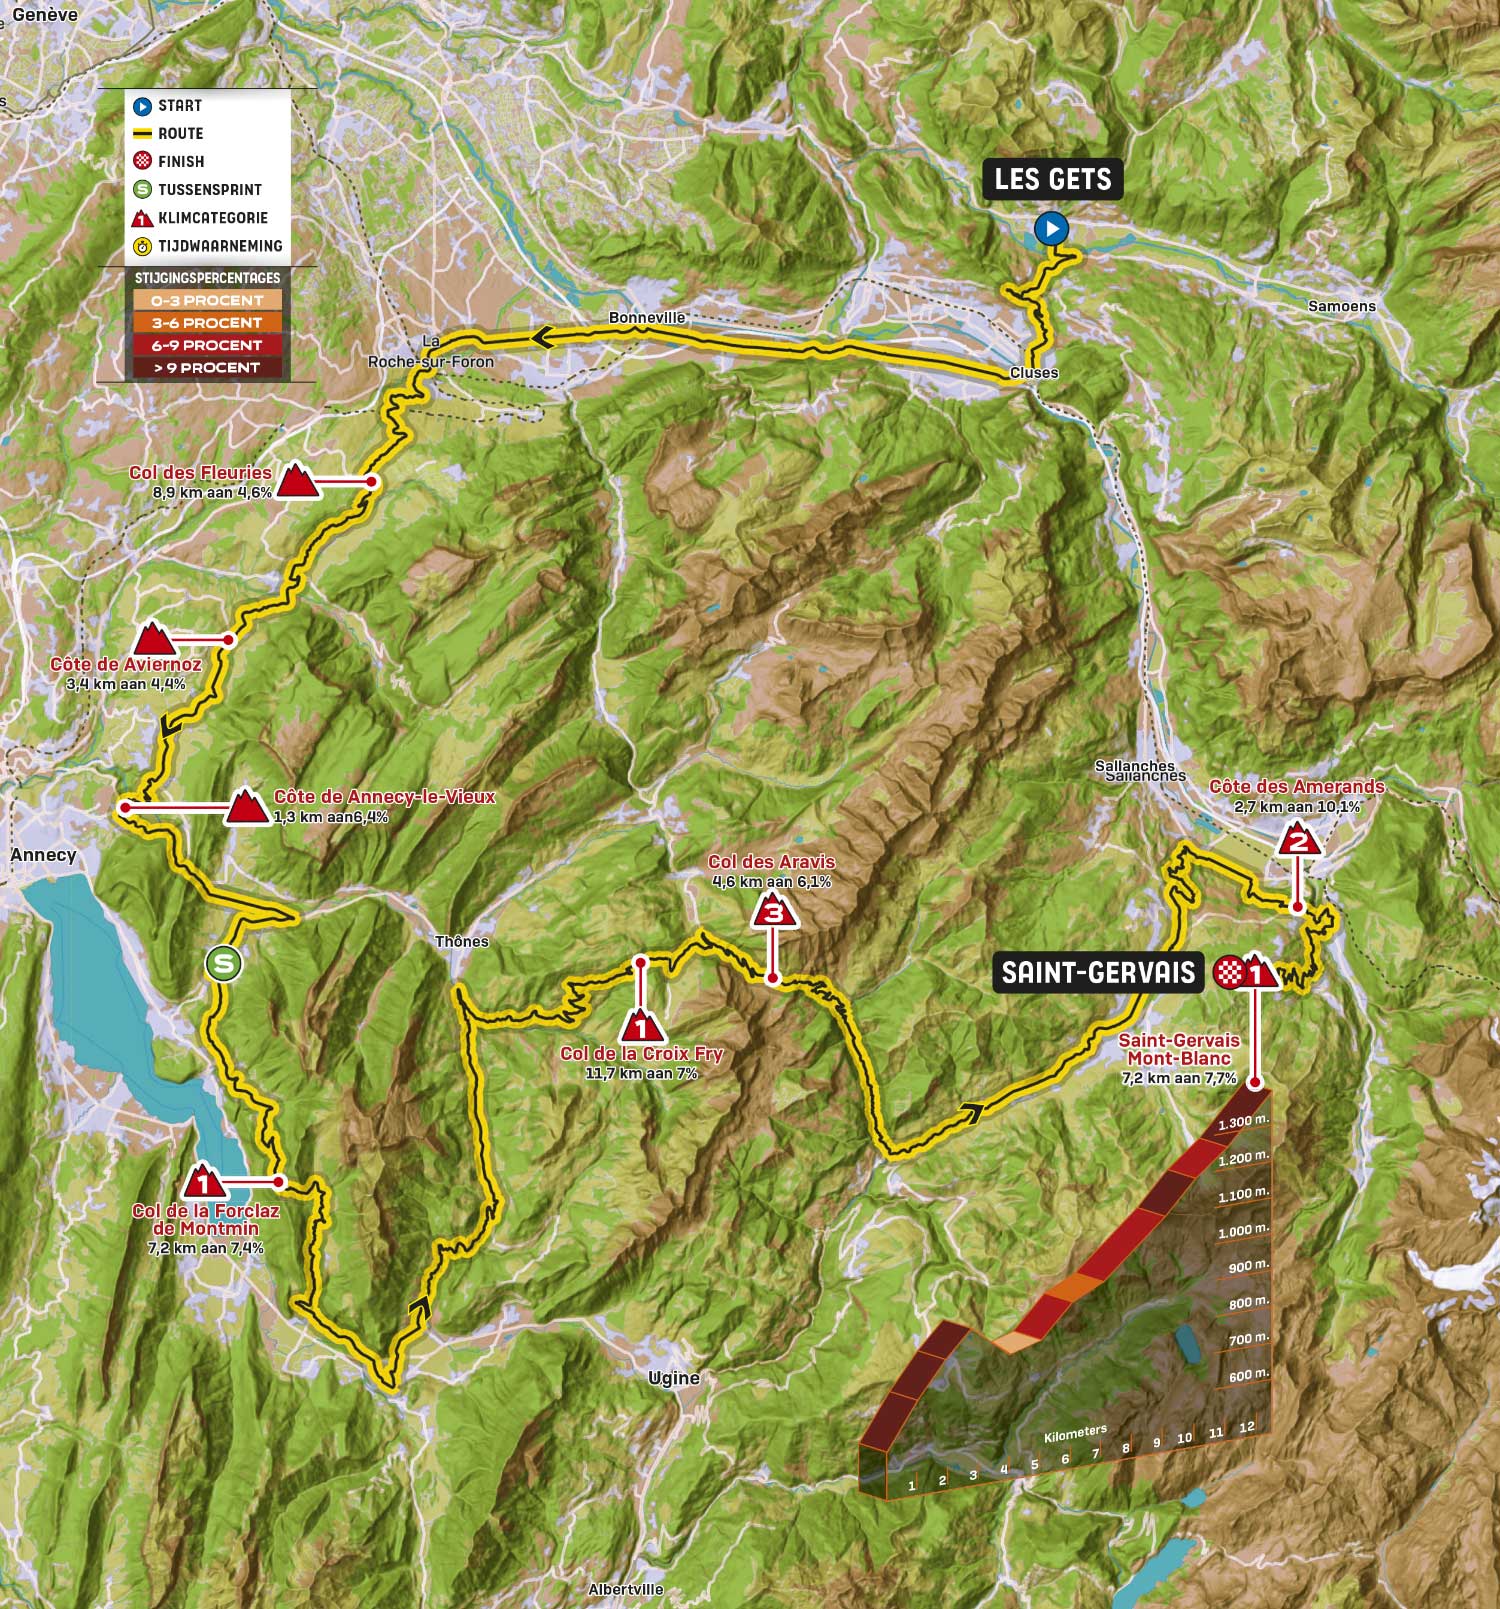 Les Gets - Saint-Gervais Mont-Blanc  | Routekaart